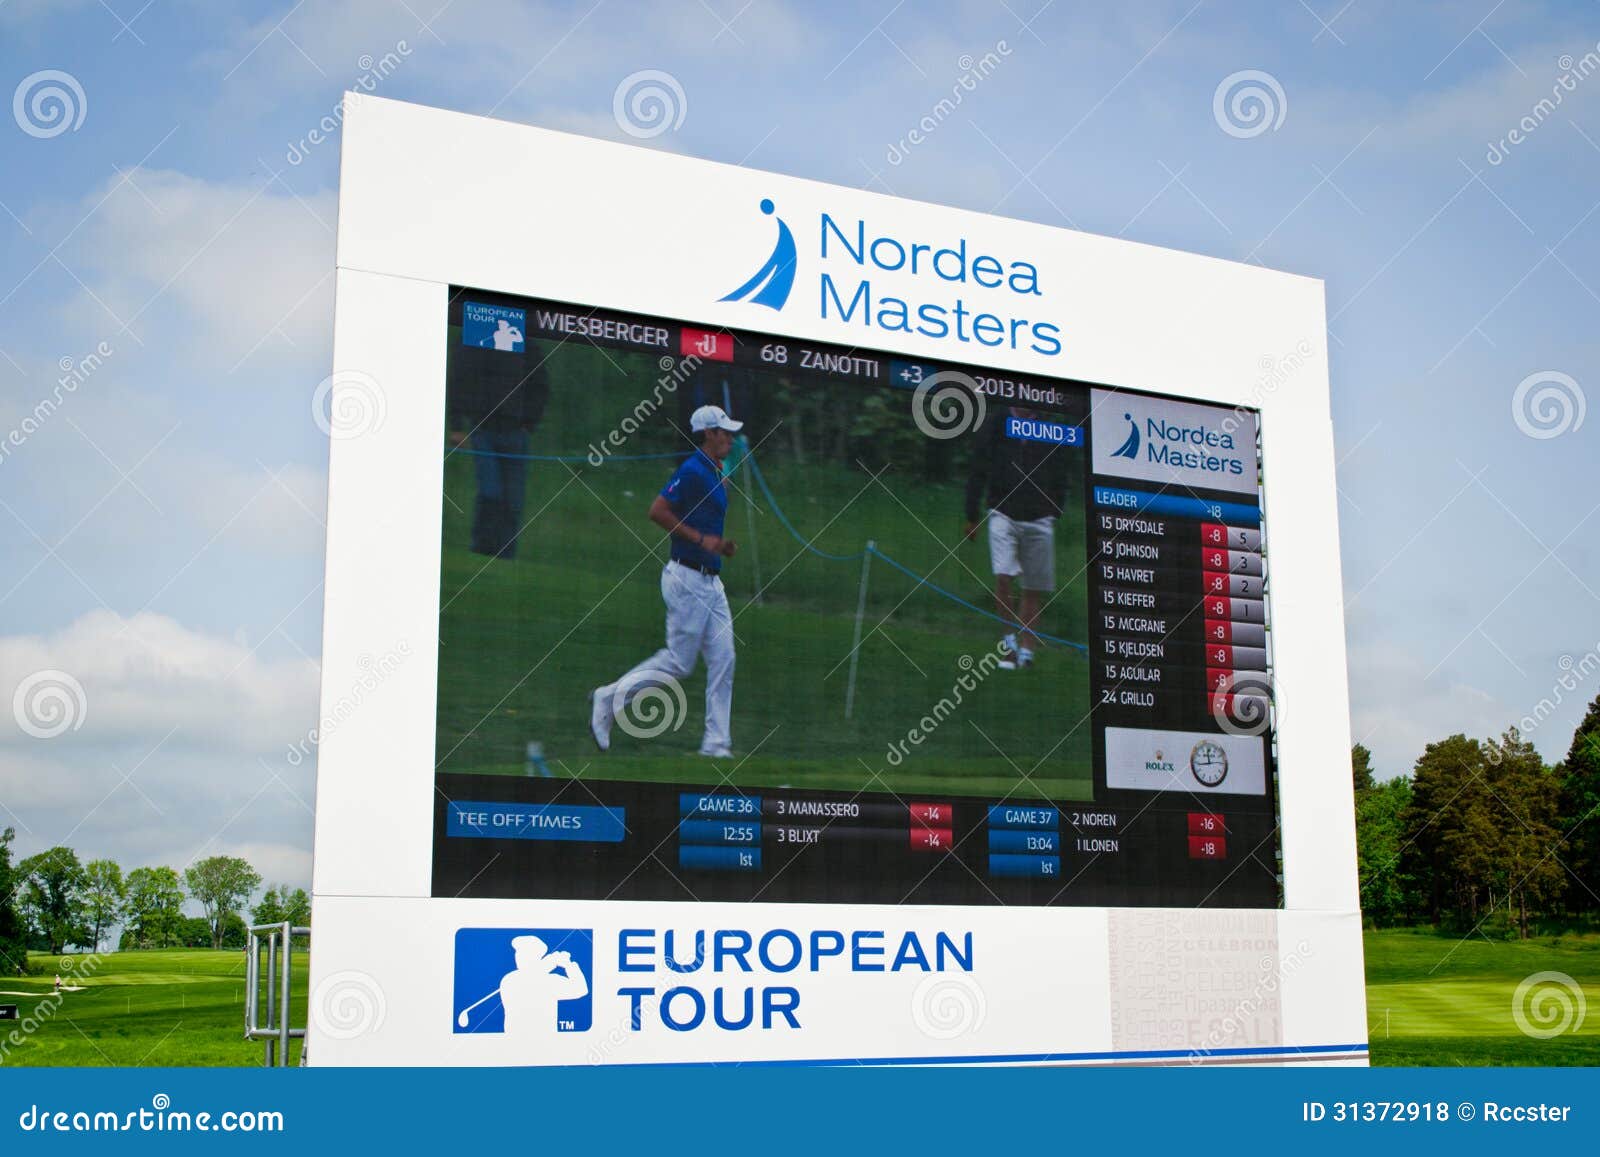 Photo: european golf scoreboard